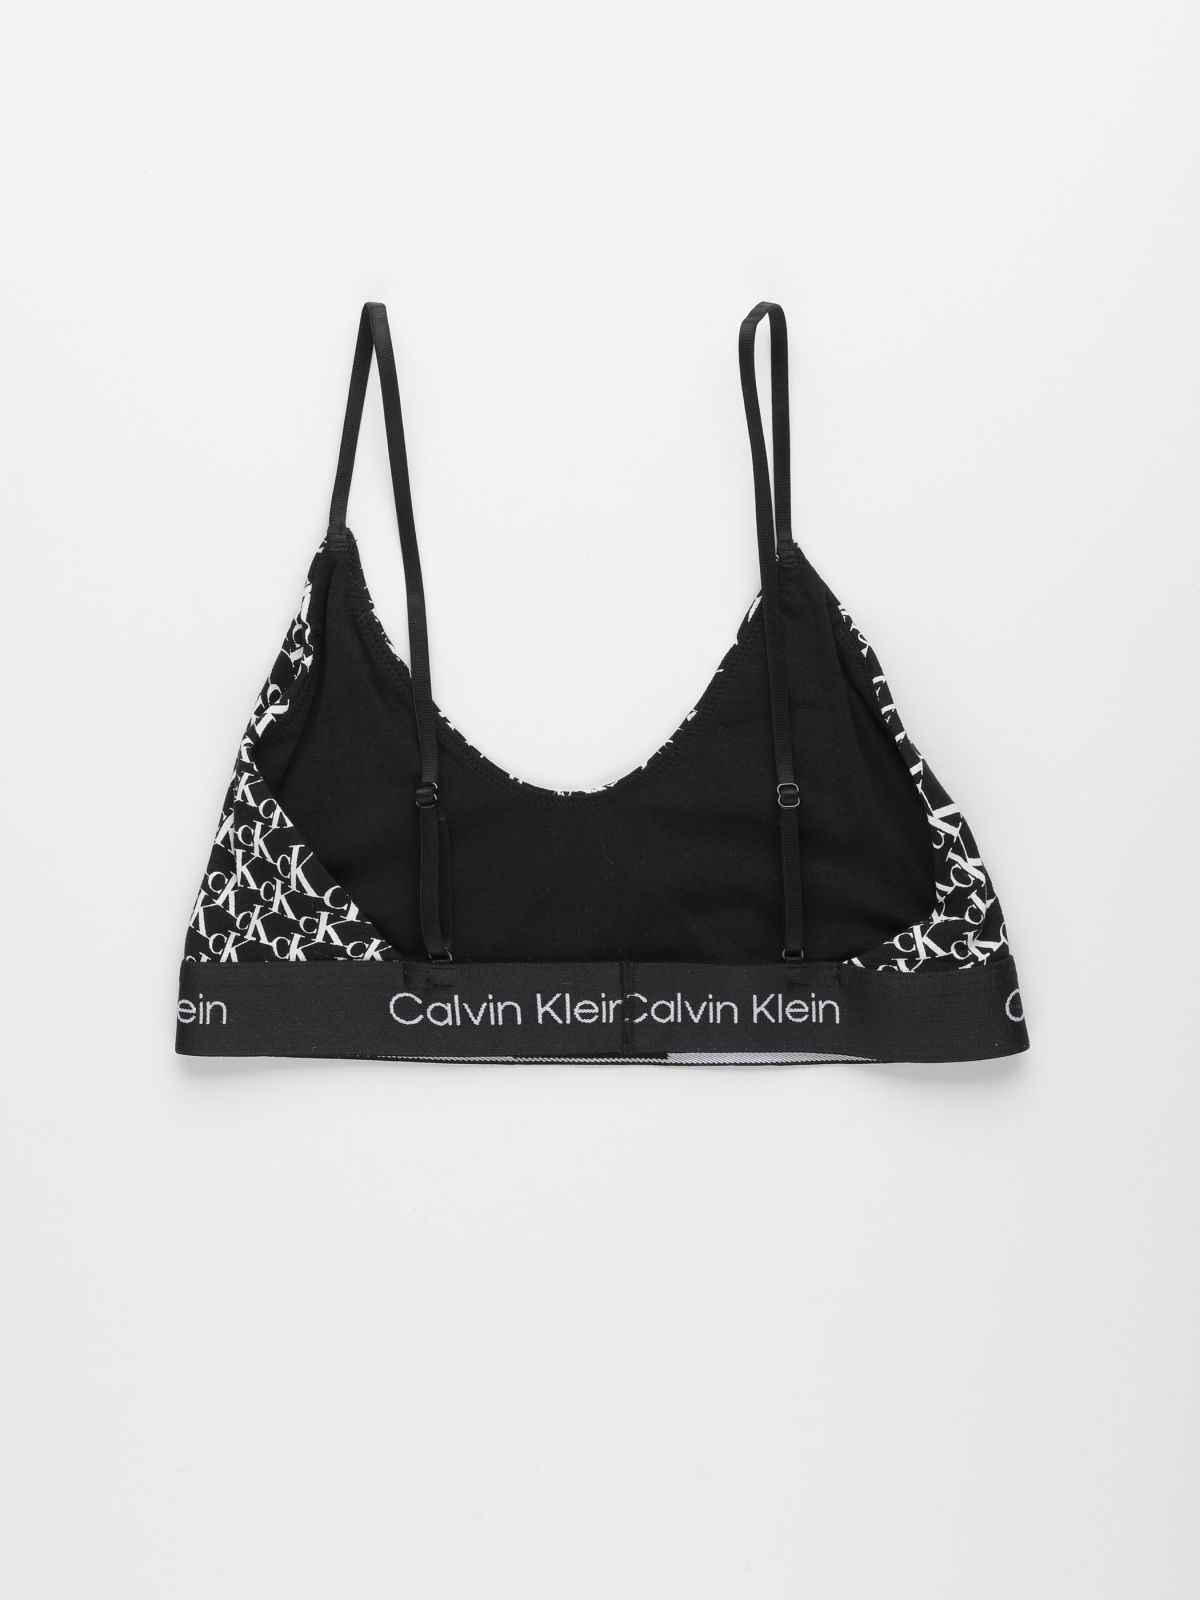  טופ בהדפס לוגו / נשים של CALVIN KLEIN